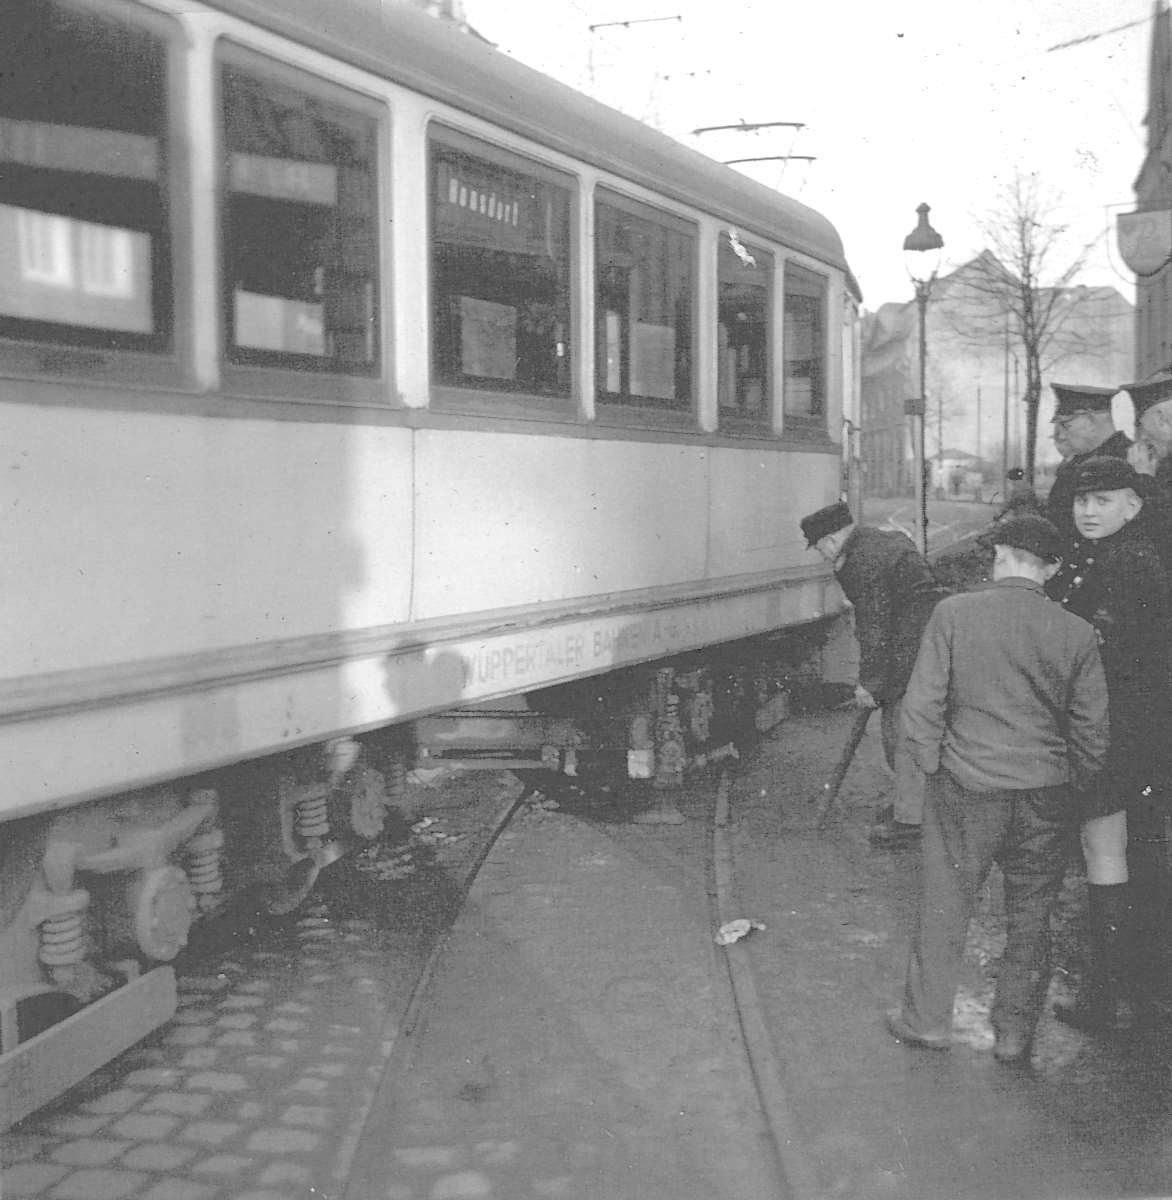 WuppertalerStrassenbahn/2_71_Tram_Wuppertal_Wagen895_Linie19_nach_Ronsdorf_entgleist_vor_Bahnhof-Hotel_wohl_um_1940